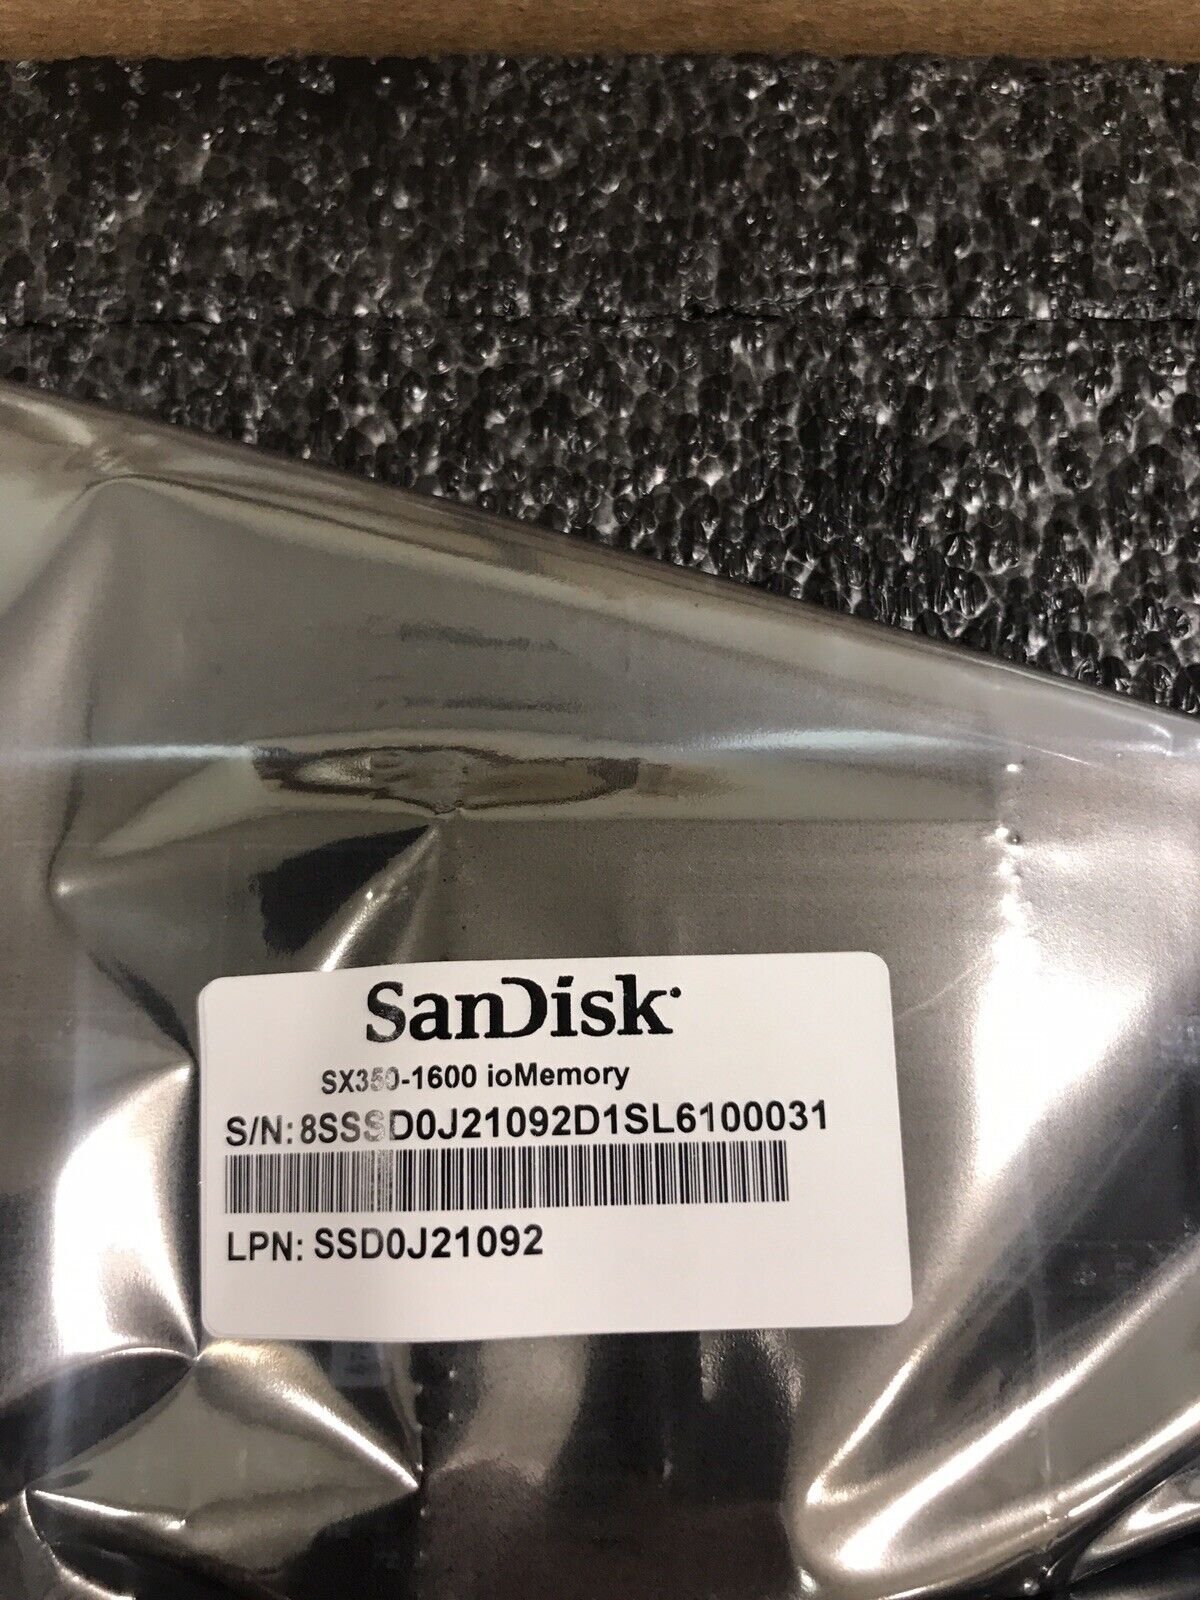 1.6TB SanDisk Fusion ioMemory SX350-1600 PCI-e SSD SDFADAMOS-1T60-SF1 MLC Flash